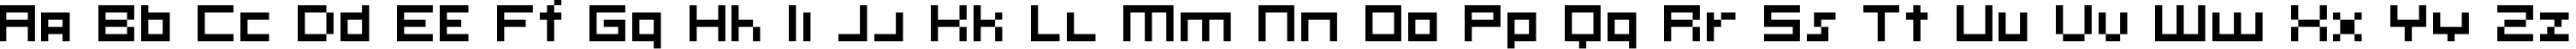 Пример написания английского алфавита шрифтом KLMN Ontology